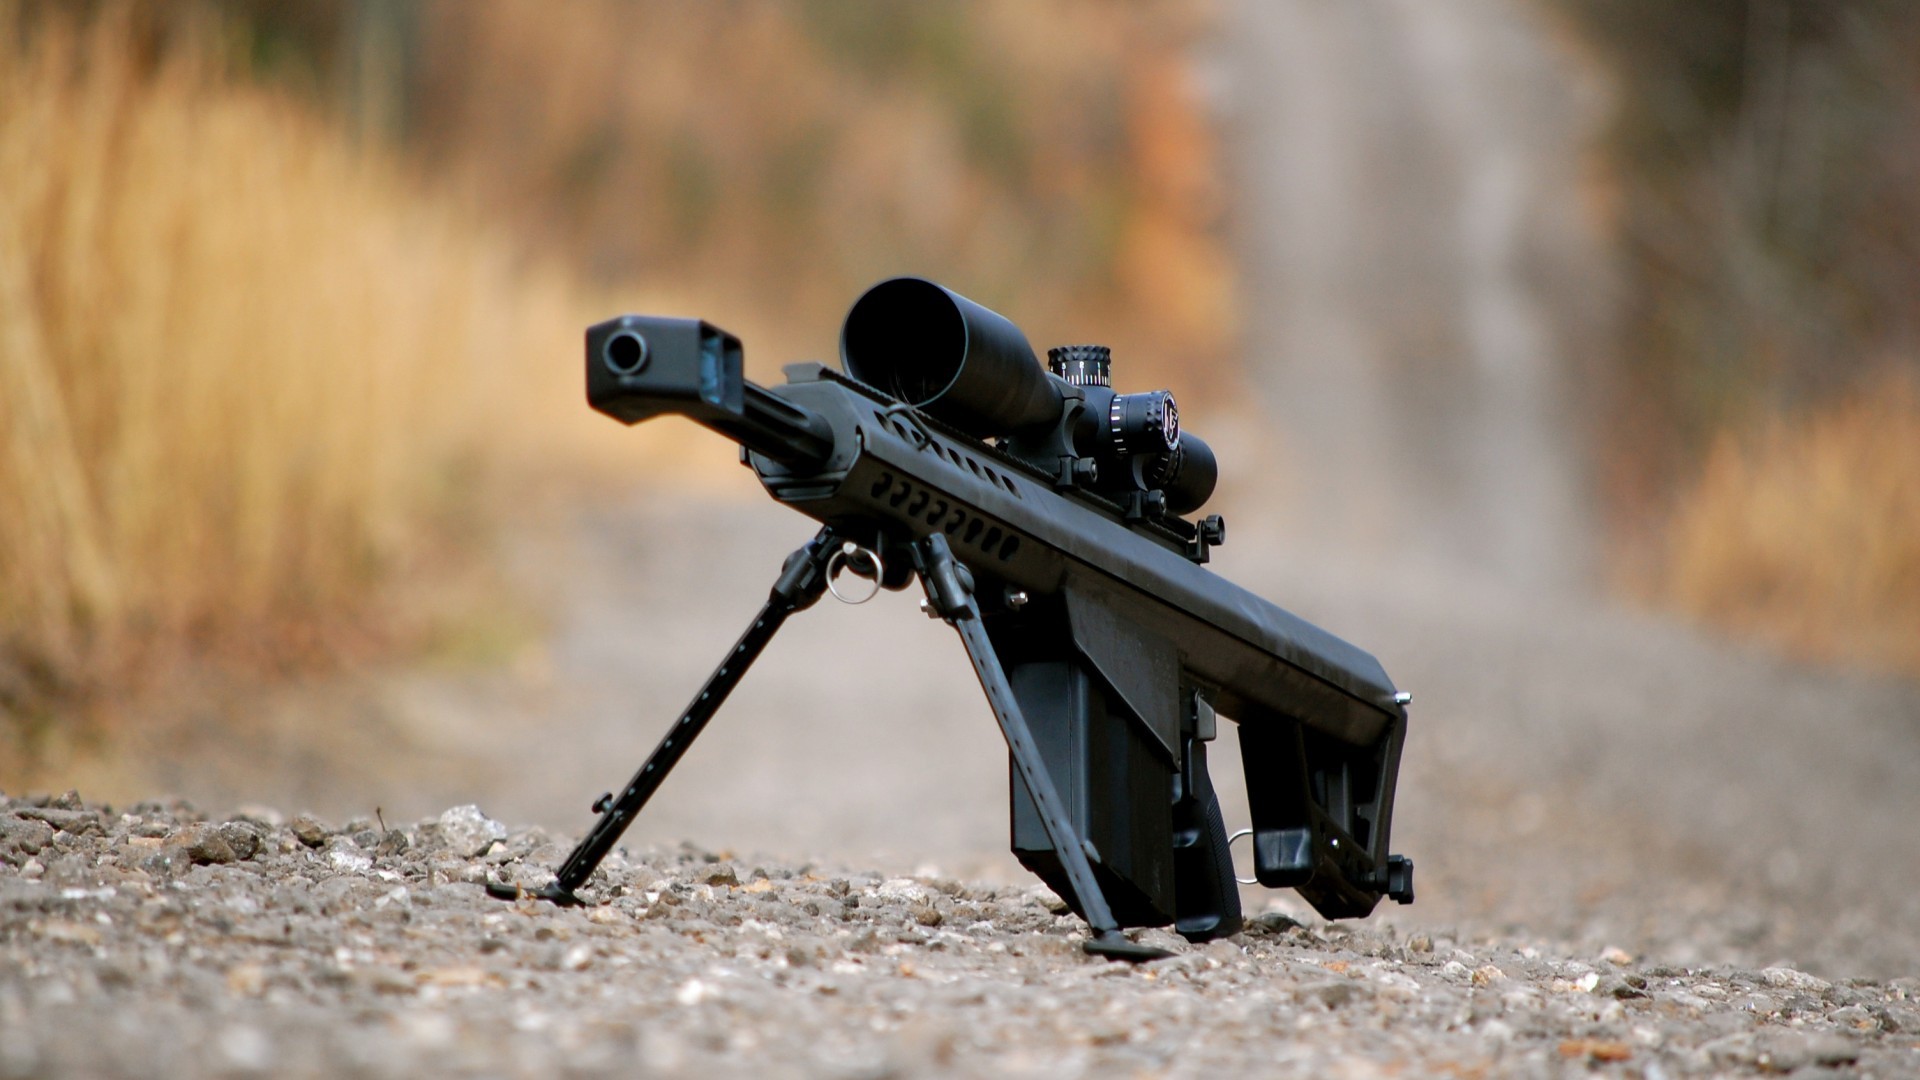 1920x1080 sniper rifle wallpaper hd 8205